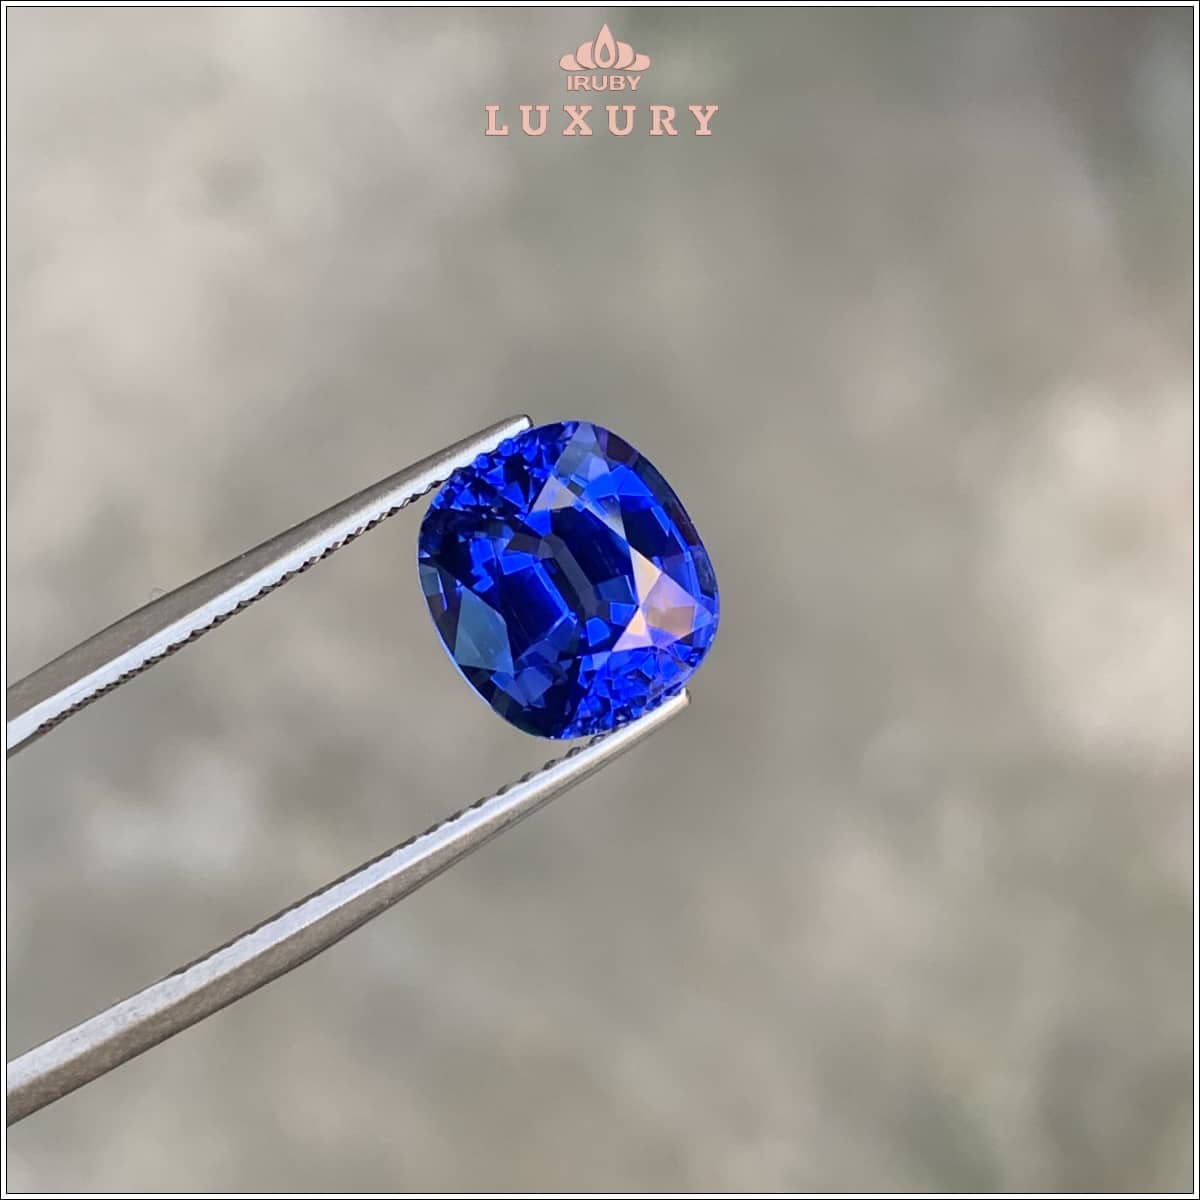 Viên Sapphire xanh lam Hoàng Gia 4,76ct - IRBS140 2311476 viên đá chủ của thiết kế mẫu Hoàng Tử 